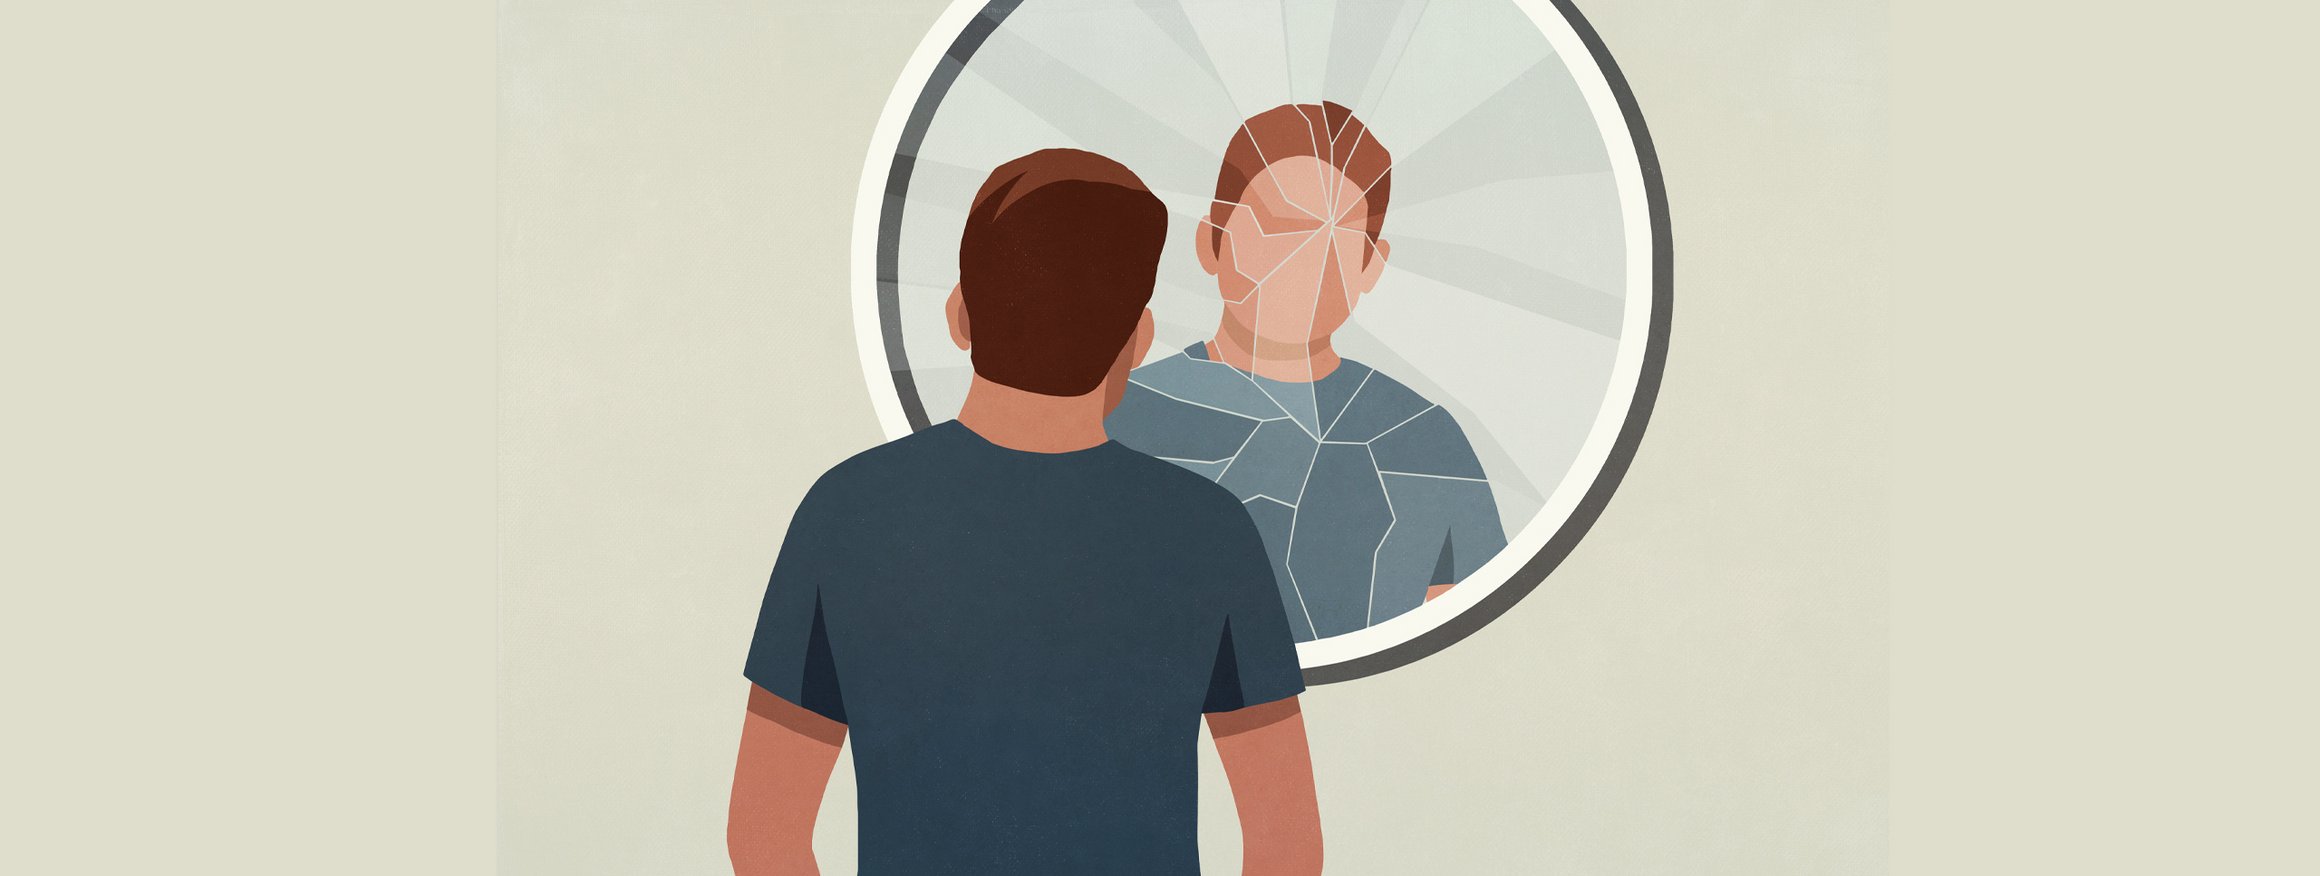 Ein Mann steht vor einen zersplitterten Spiegel und sein Spiegelbild ist verzerrt